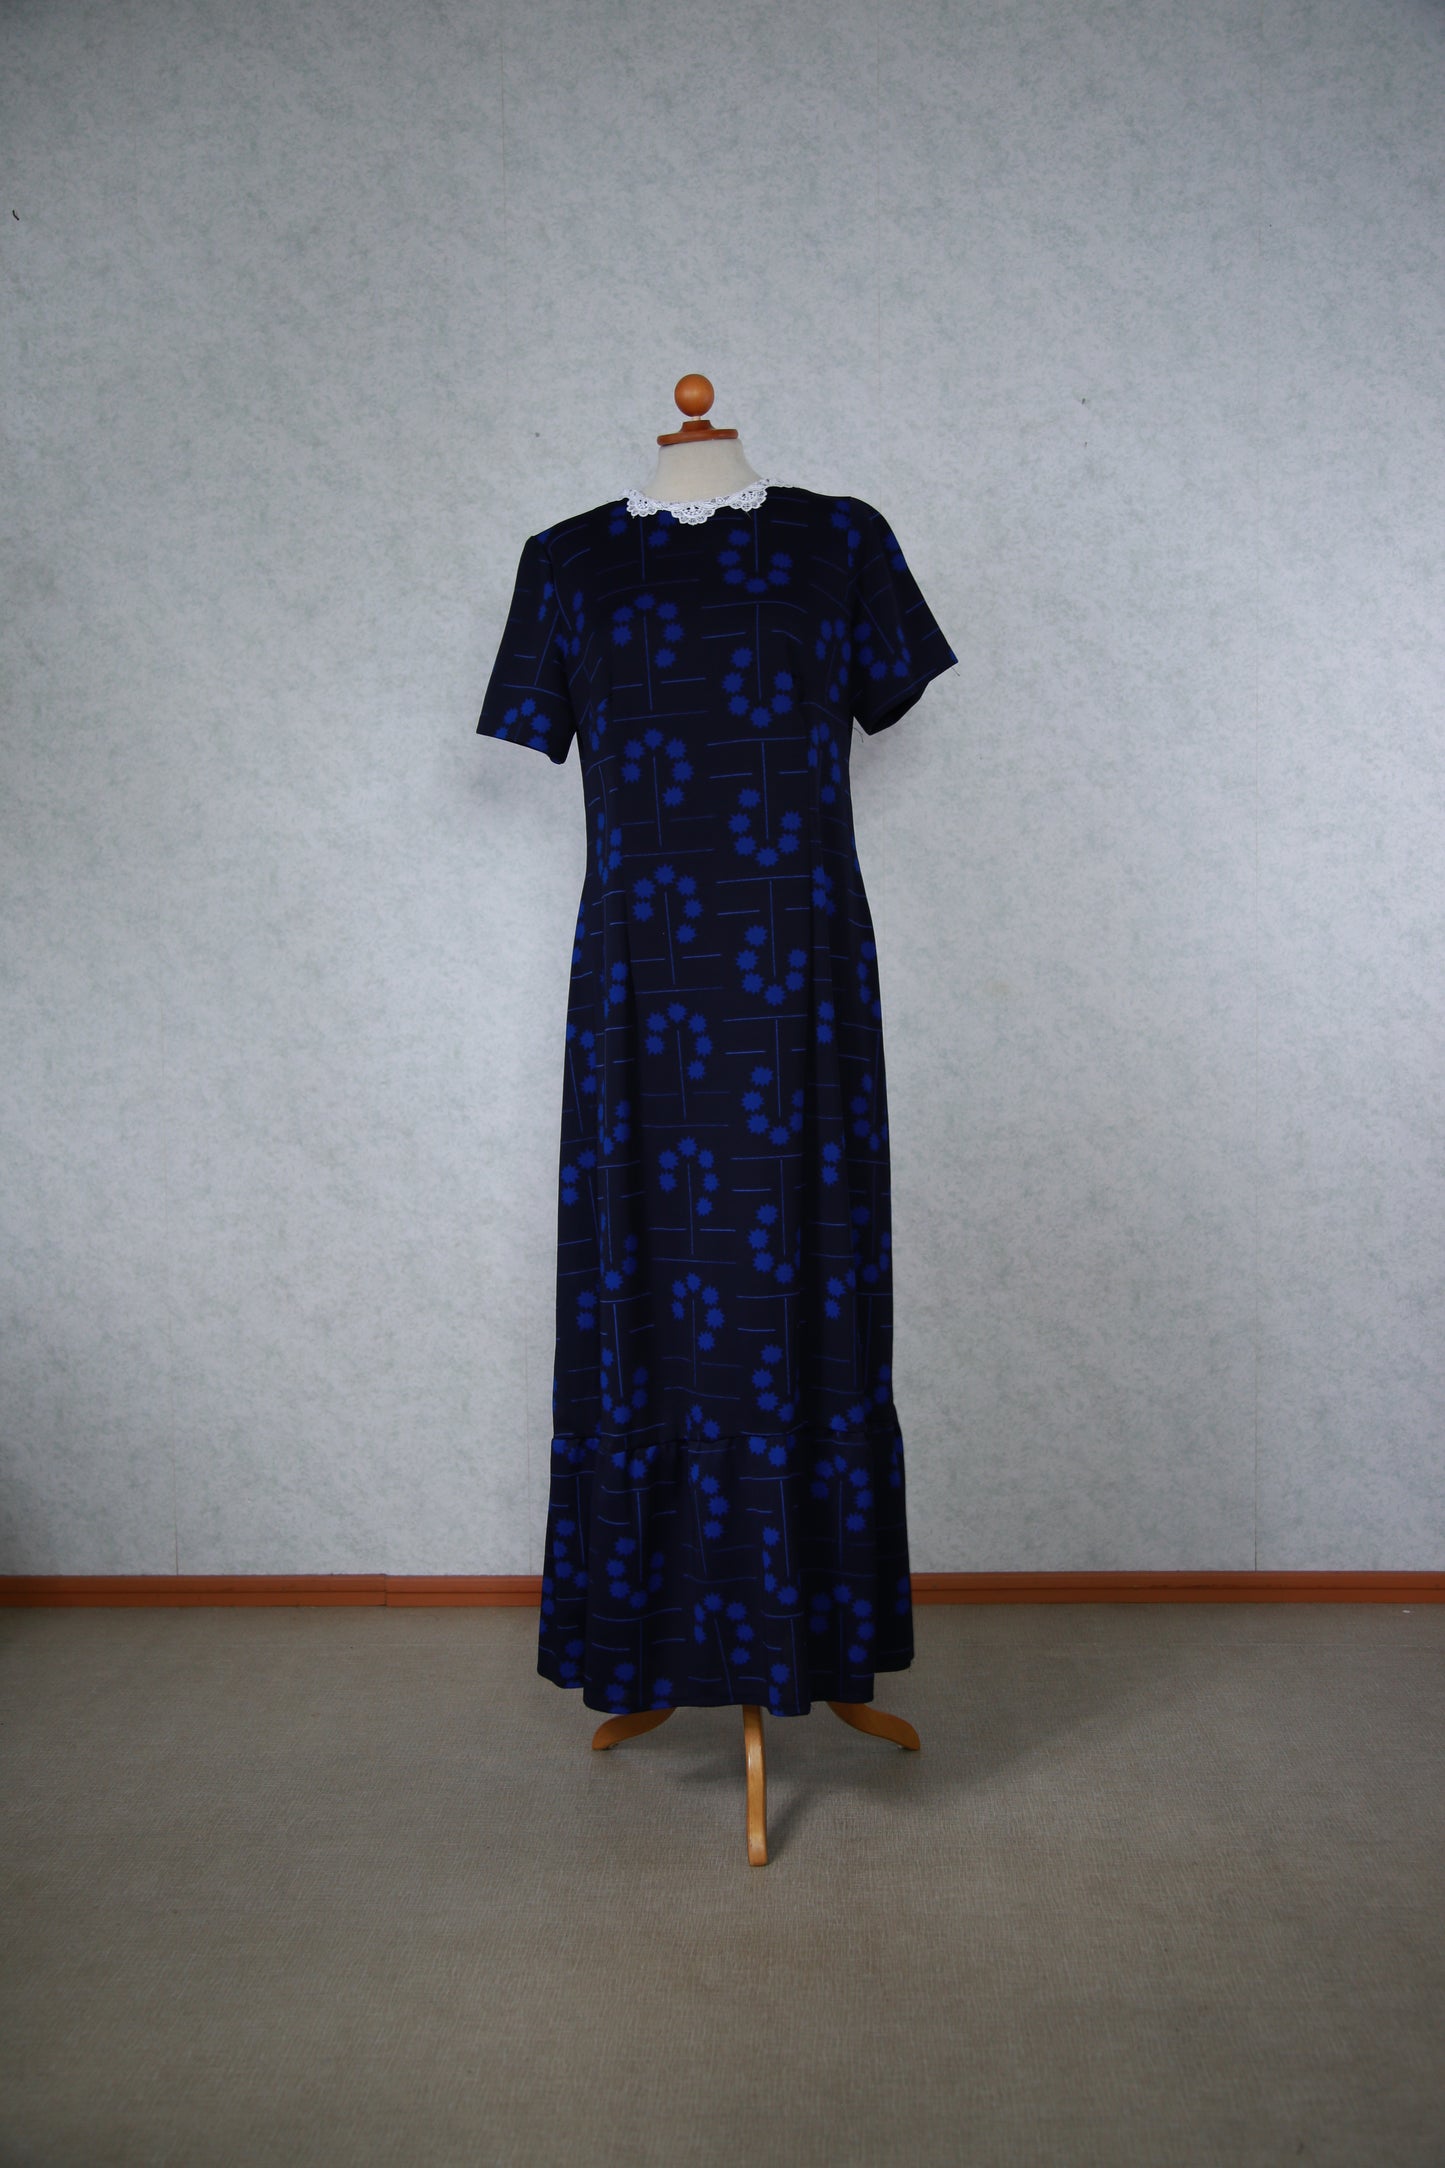 Tummansininen kuviollinen pitkä mekko pitsikauluksella